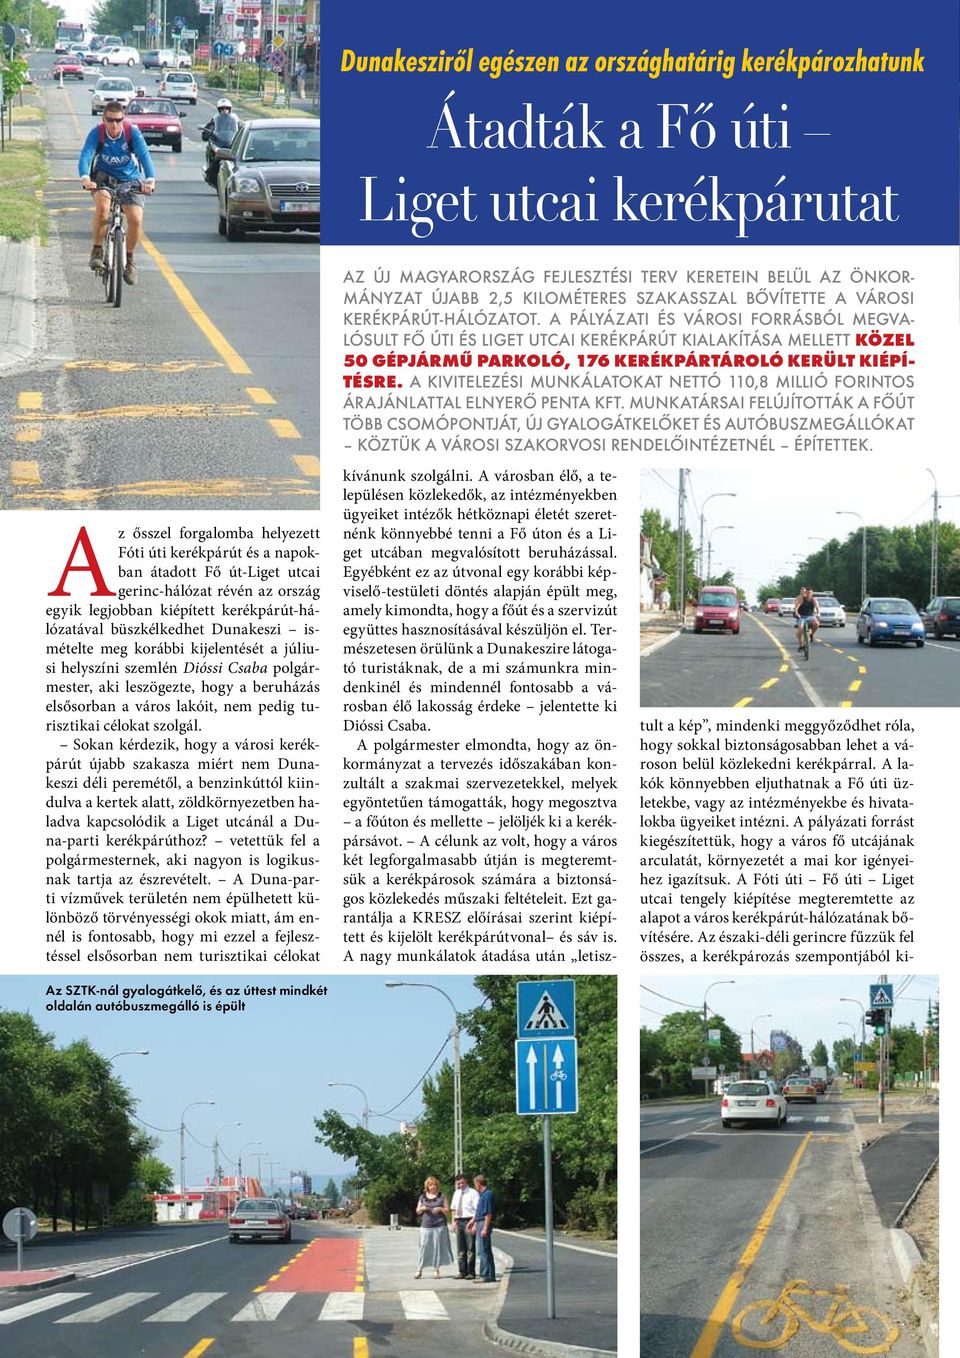 A pályázati és városi forrásból megvalósult Fő úti és Liget utcai kerékpárút kialakítása mellett közel 50 gépjármű parkoló, 176 kerékpártároló került kiépítésre.